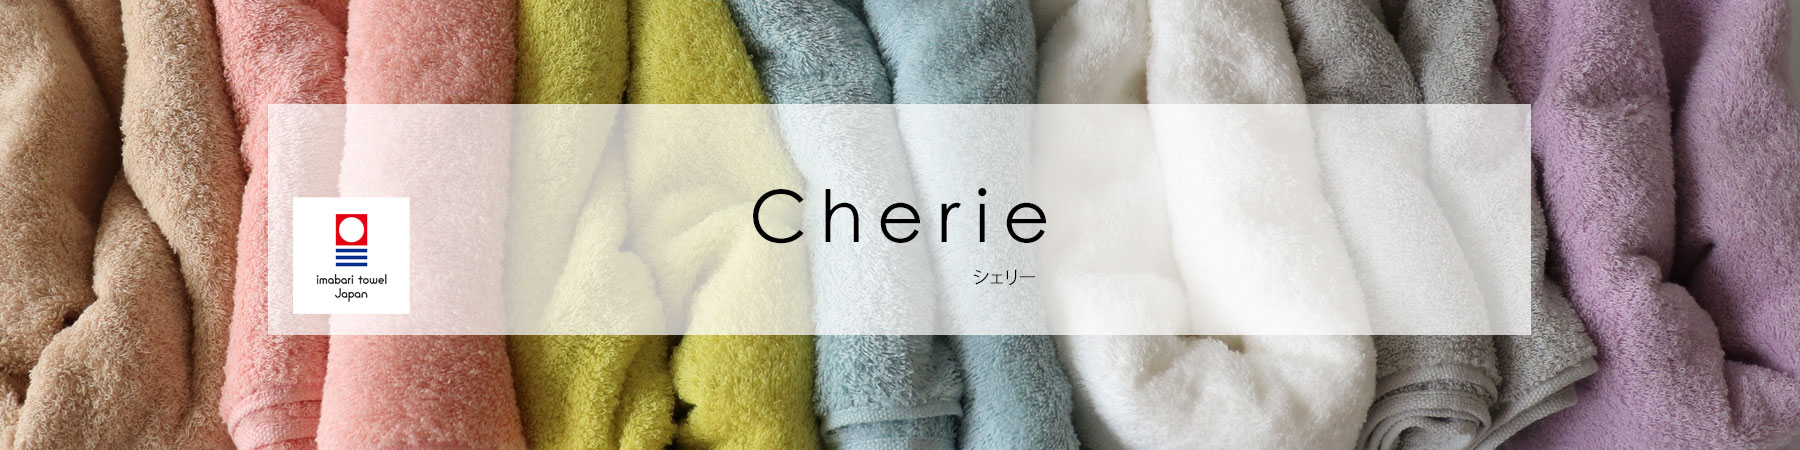 長めのパイルで包み込まれる心地良さ♪ おしゃれで洗練されたカラータオル 日本製 今治タオル 色を選べるフェイスタオル 5枚組 Cherie シェリー